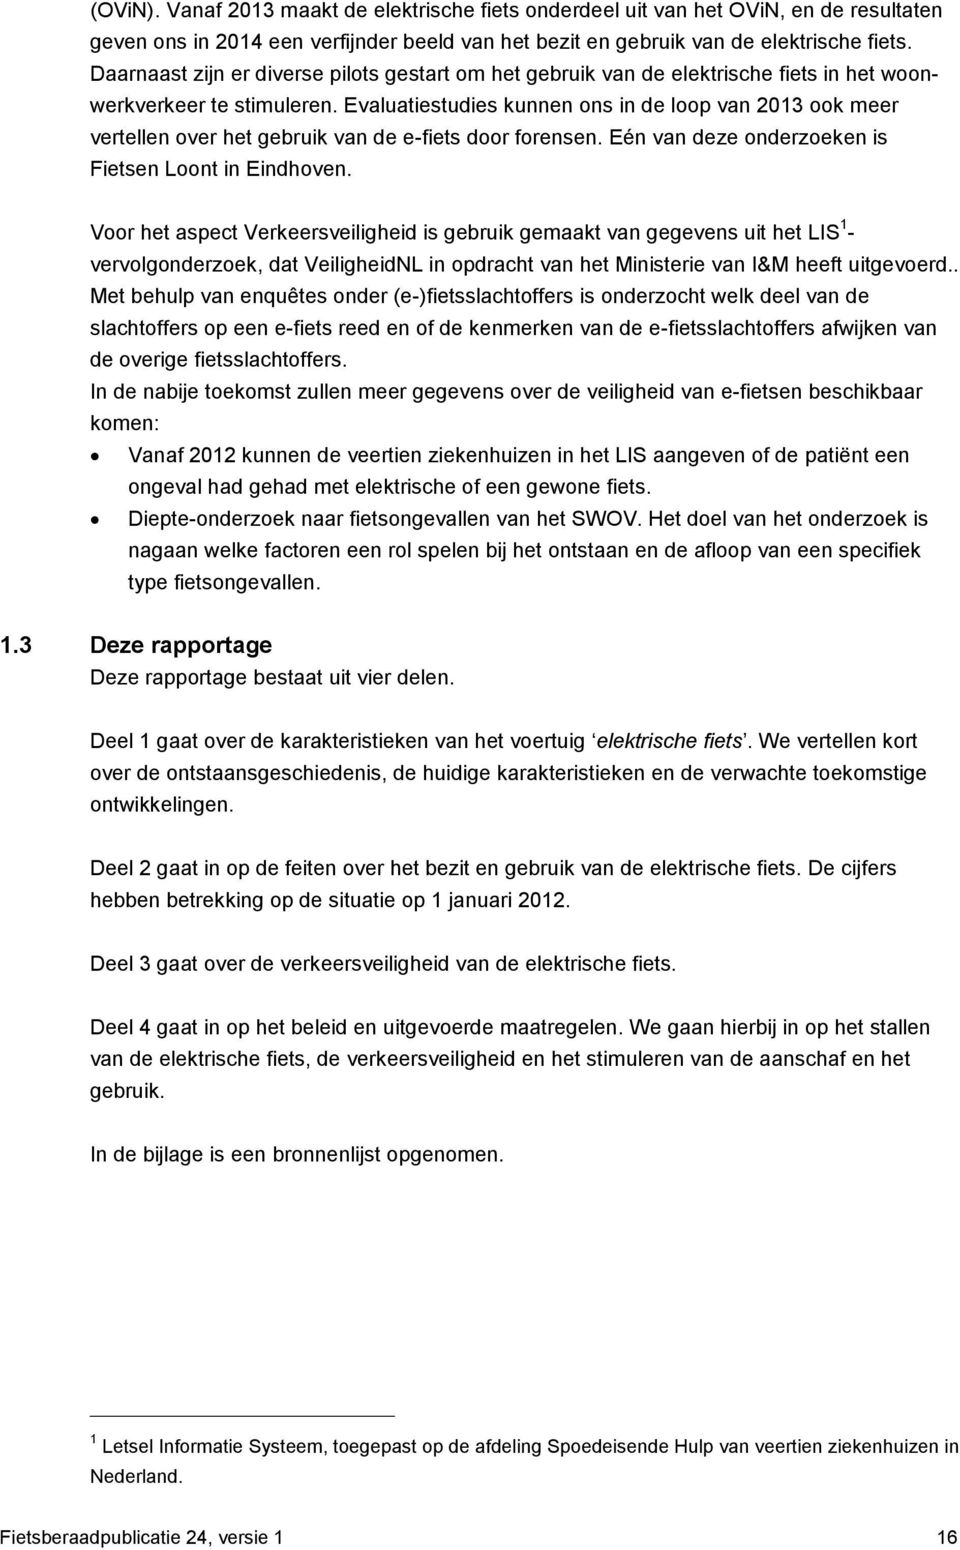 Evaluatiestudies kunnen ons in de loop van 2013 ook meer vertellen over het gebruik van de e-fiets door forensen. Eén van deze onderzoeken is Fietsen Loont in Eindhoven.